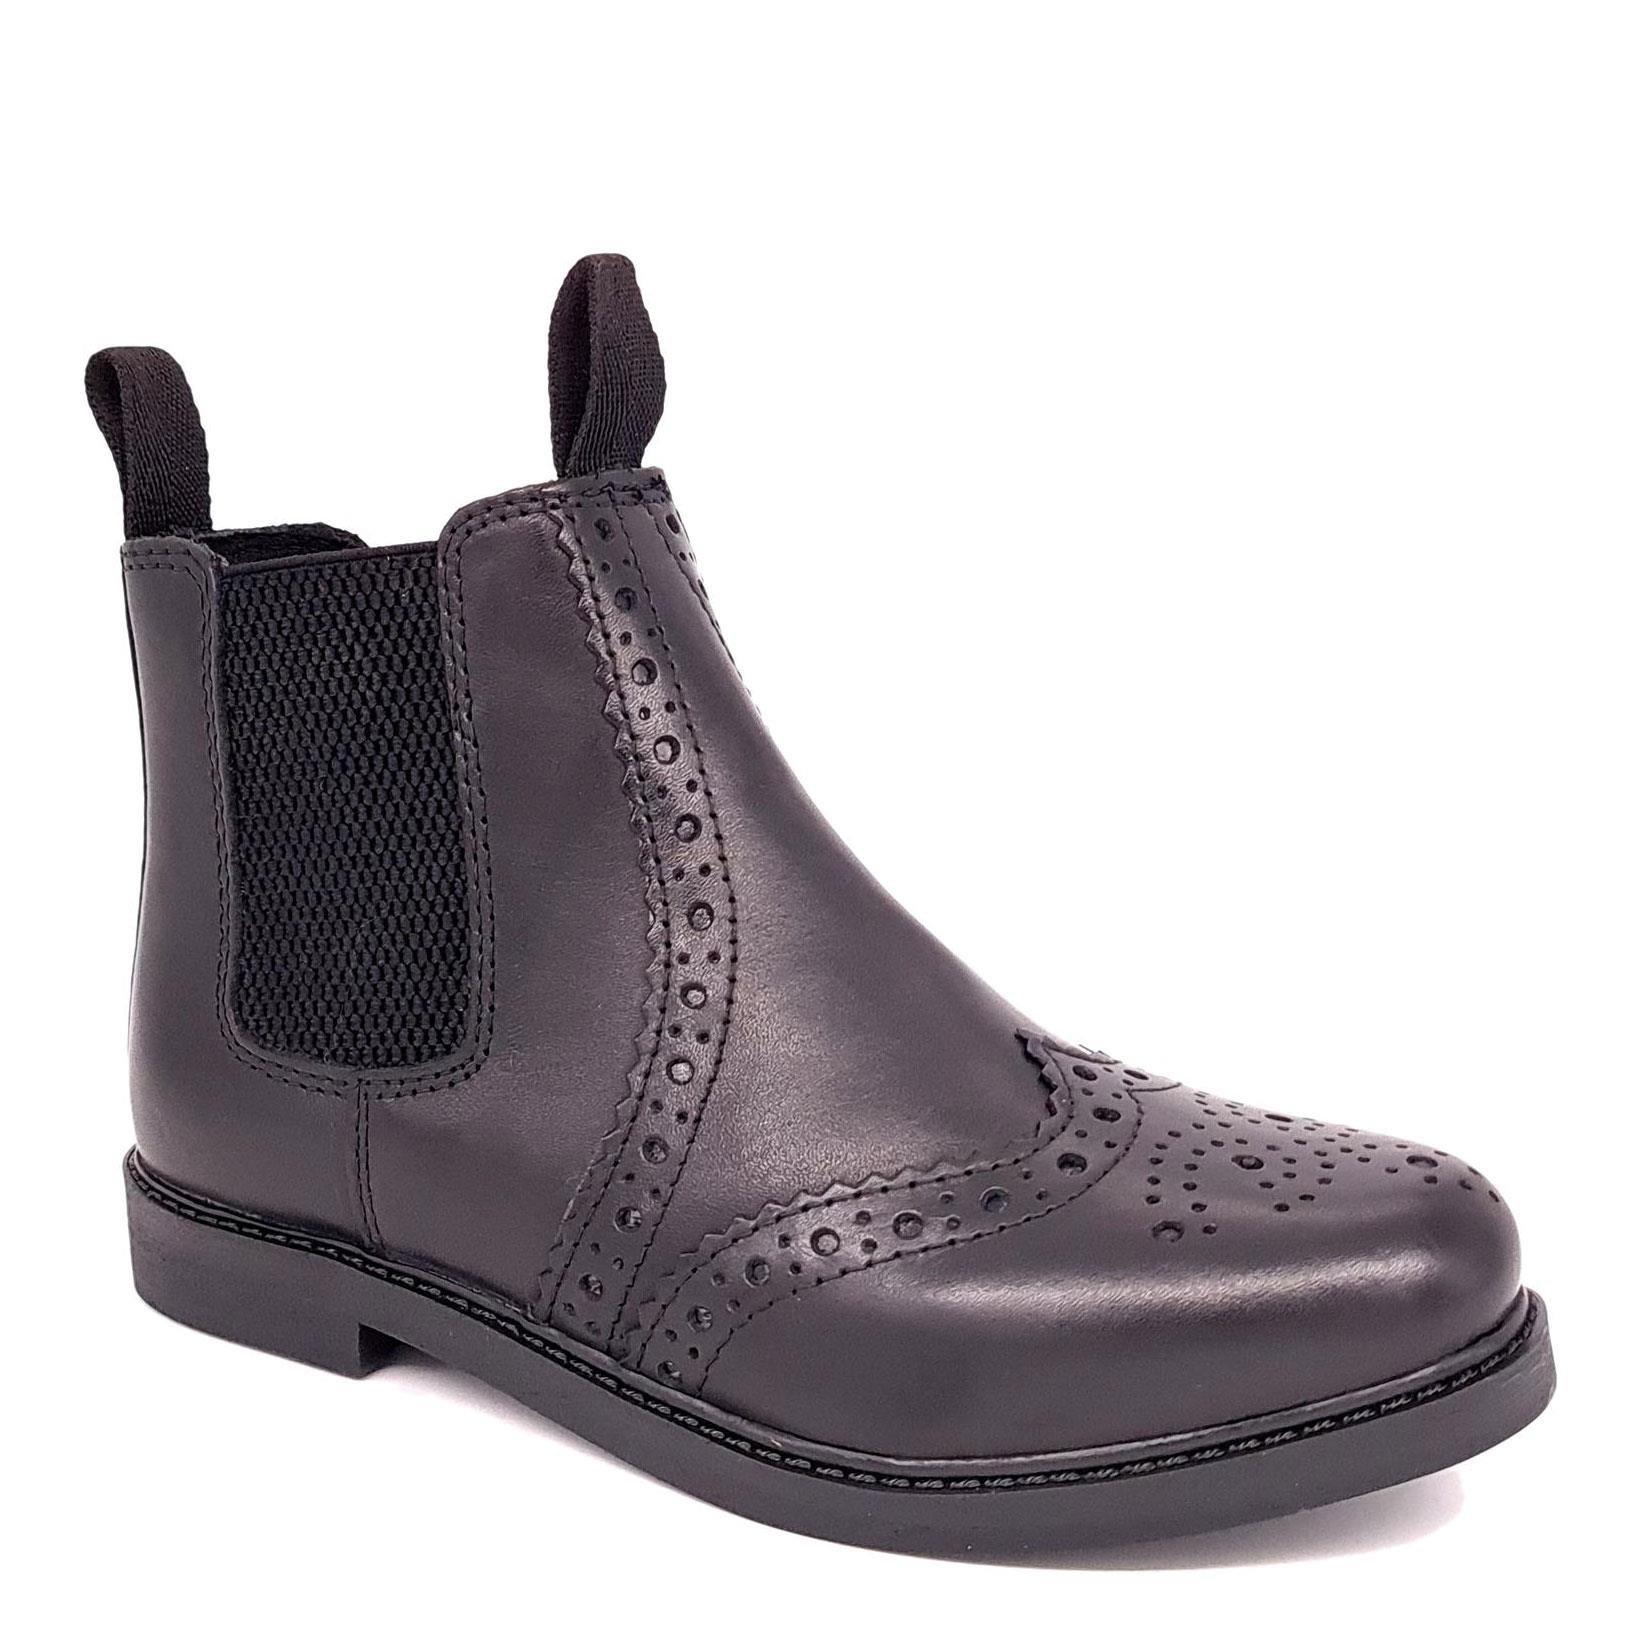 Кожаные ботинки челси с эффектом броги Cheltenham Frank James, черный кожаные броги norbury frank james коричневый